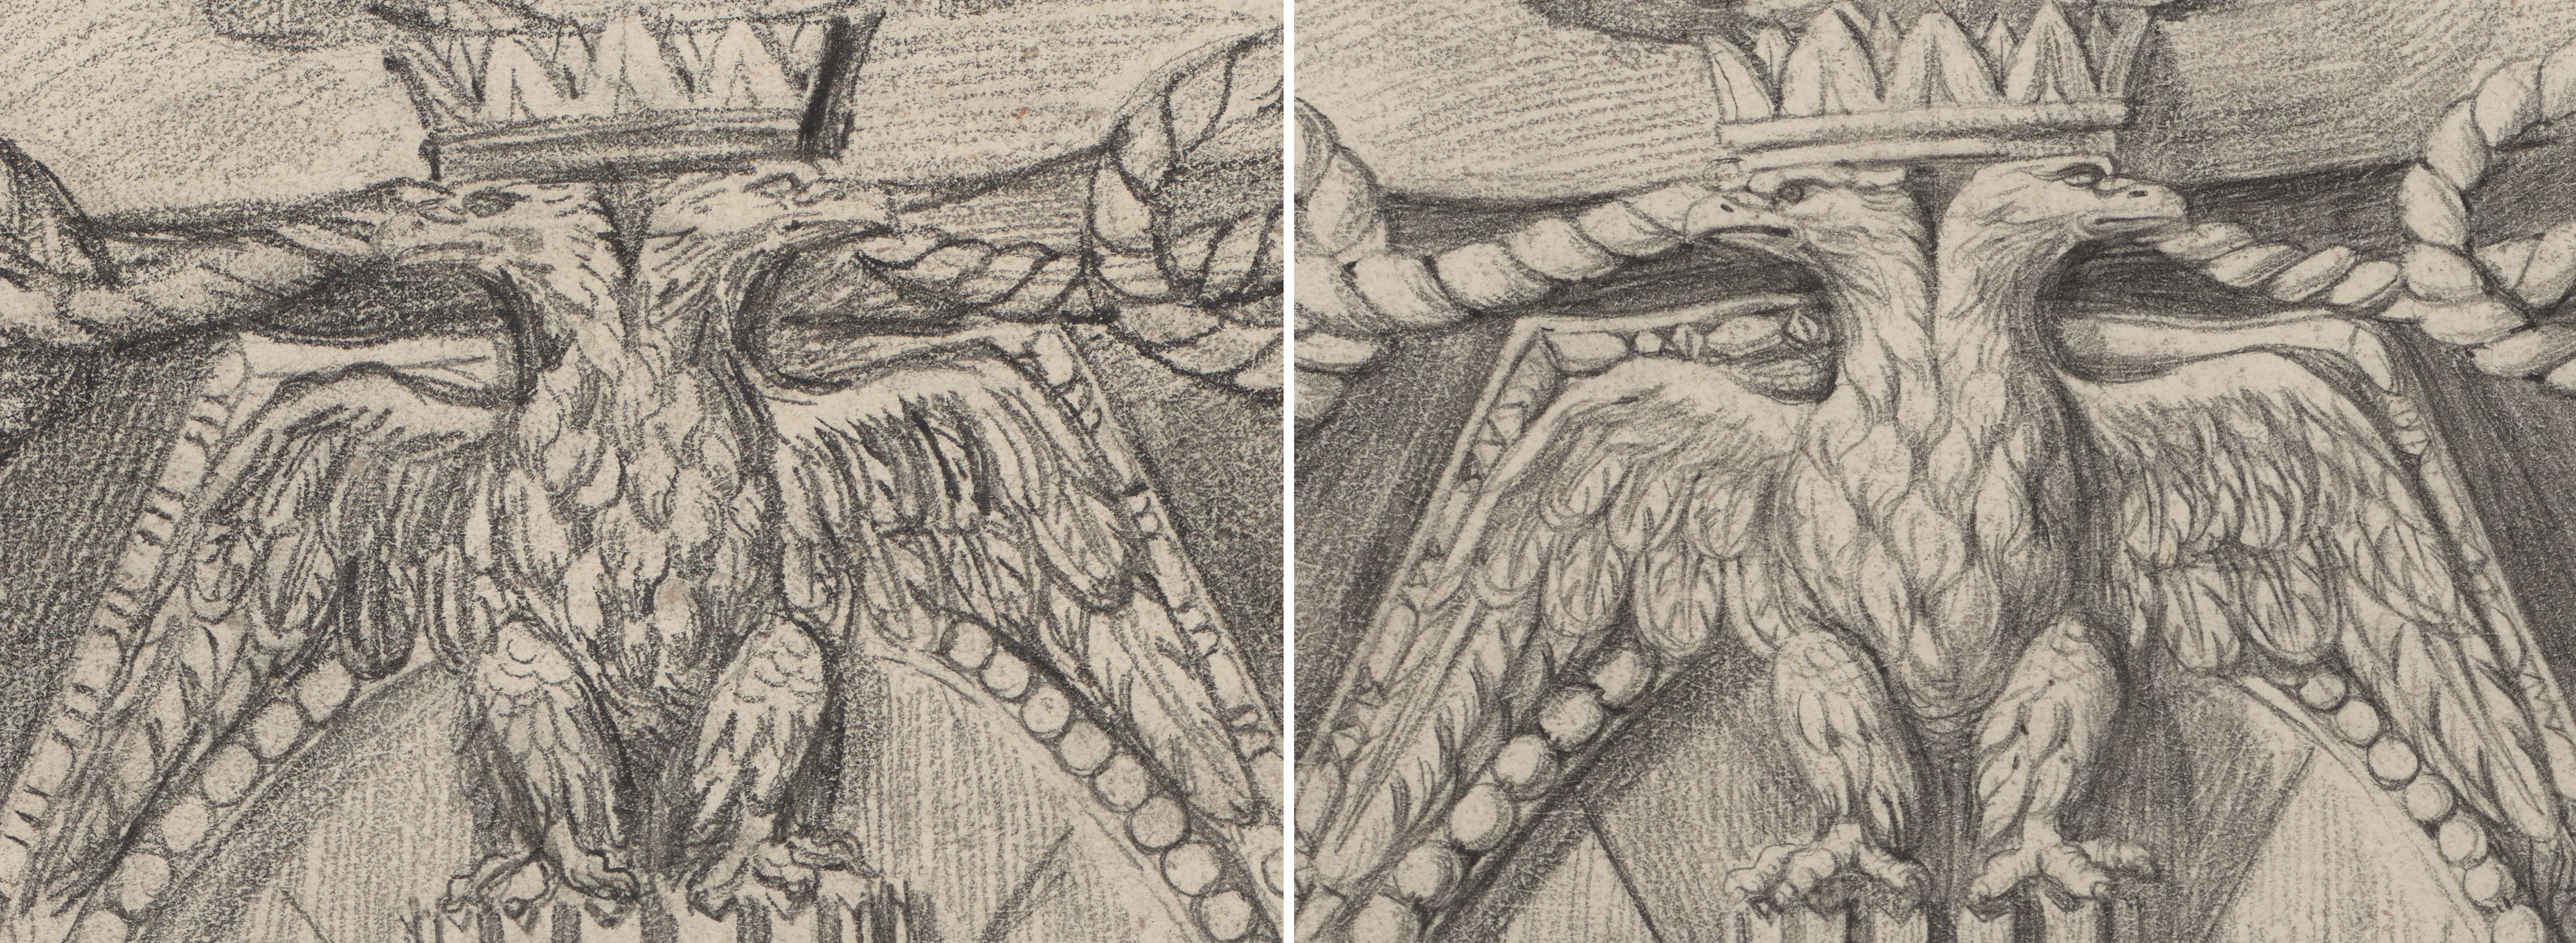 Bildmontage aus zwei Zeichnungsdetails mit Close-up des Adlers